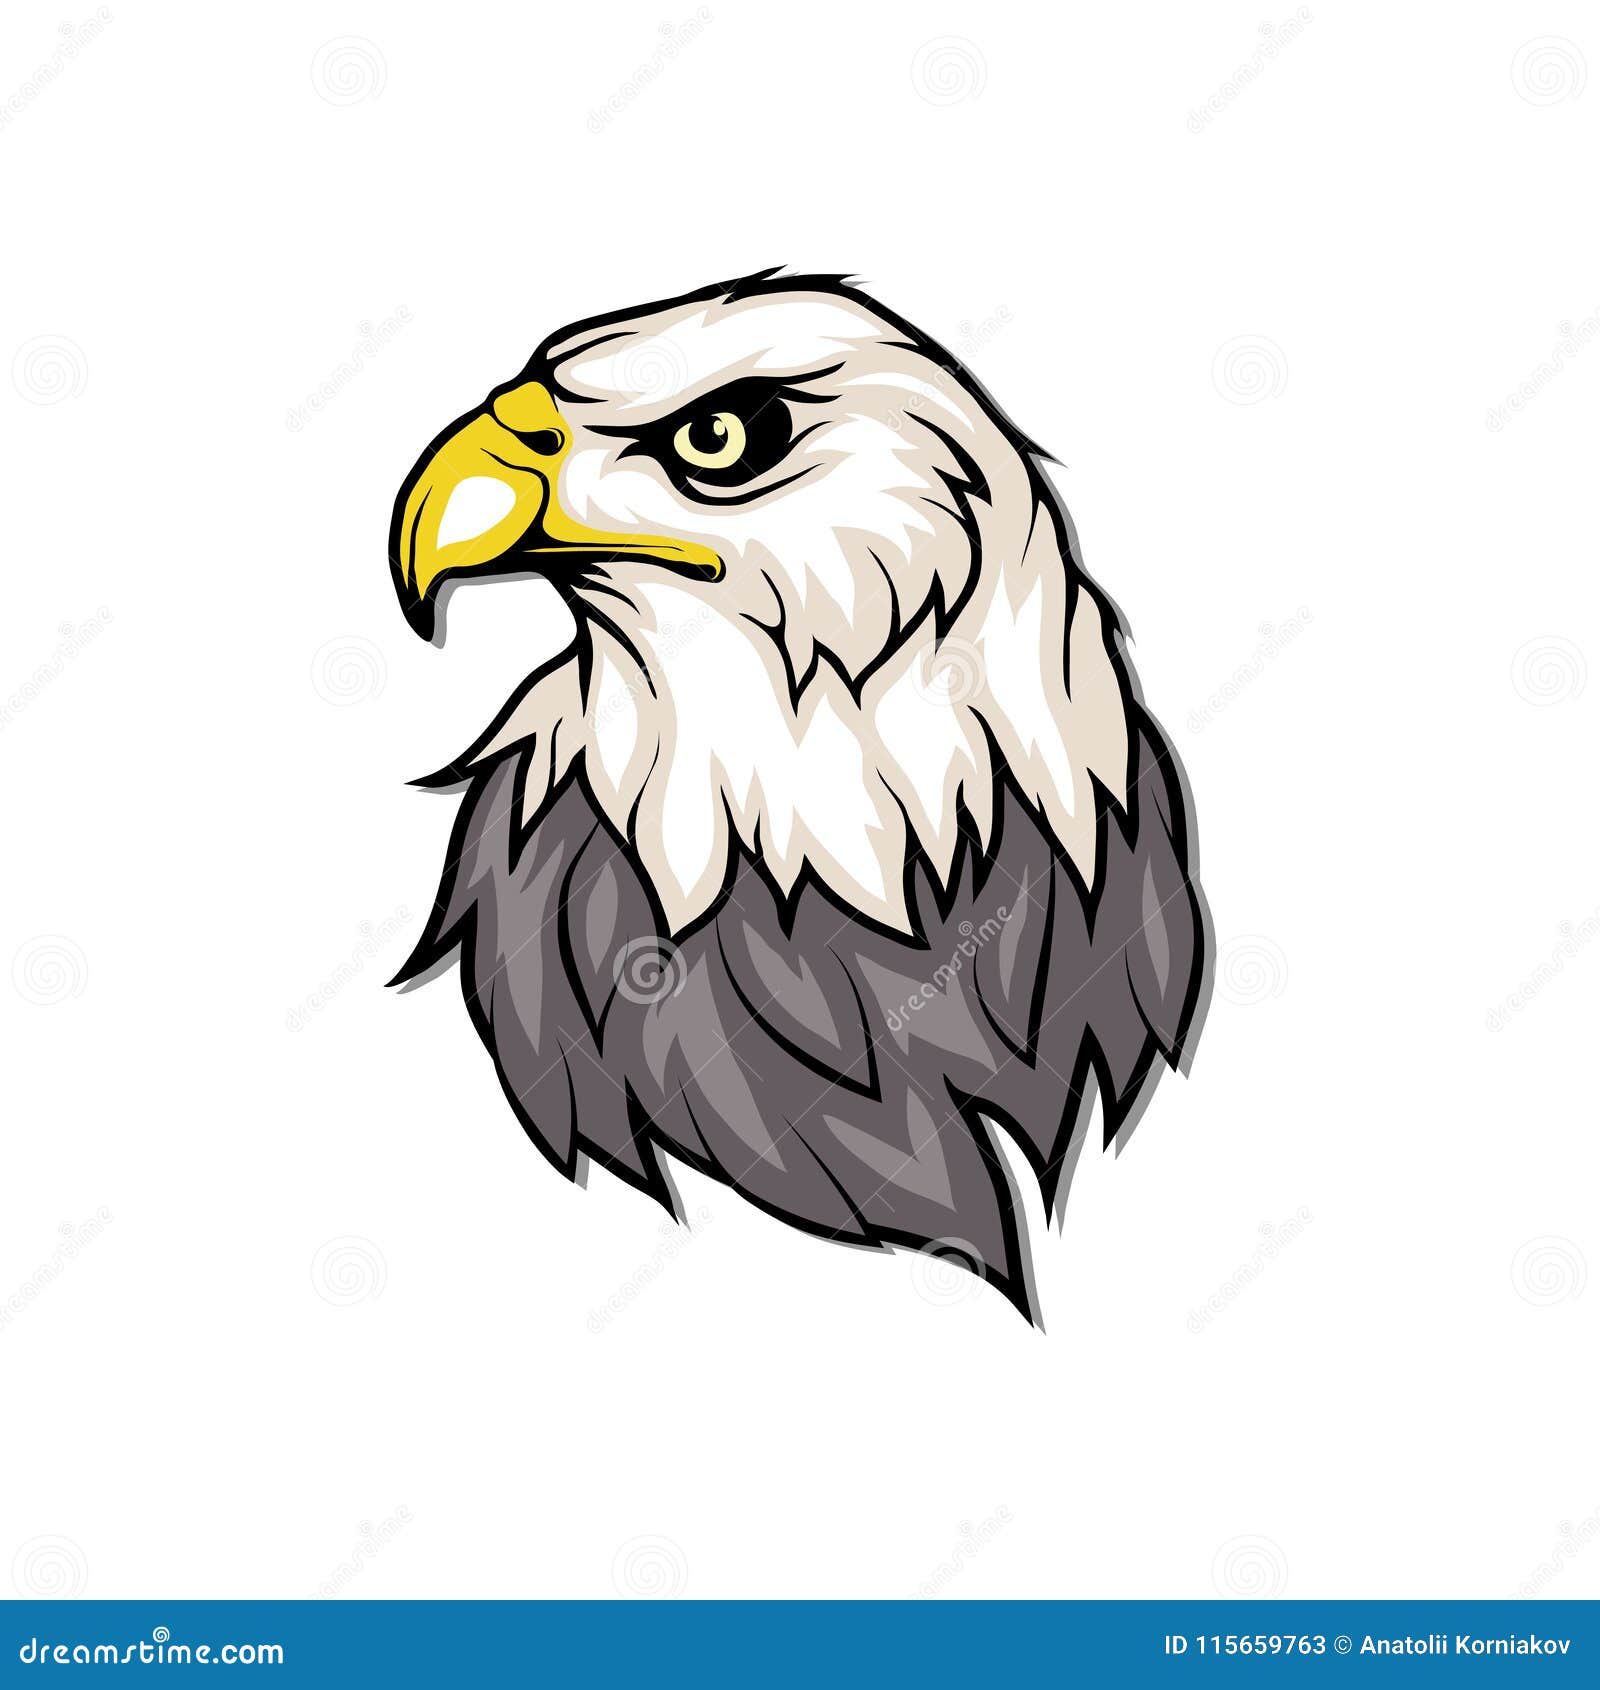 Download Bird Eagle Logo RoyaltyFree Vector Graphic  Pixabay